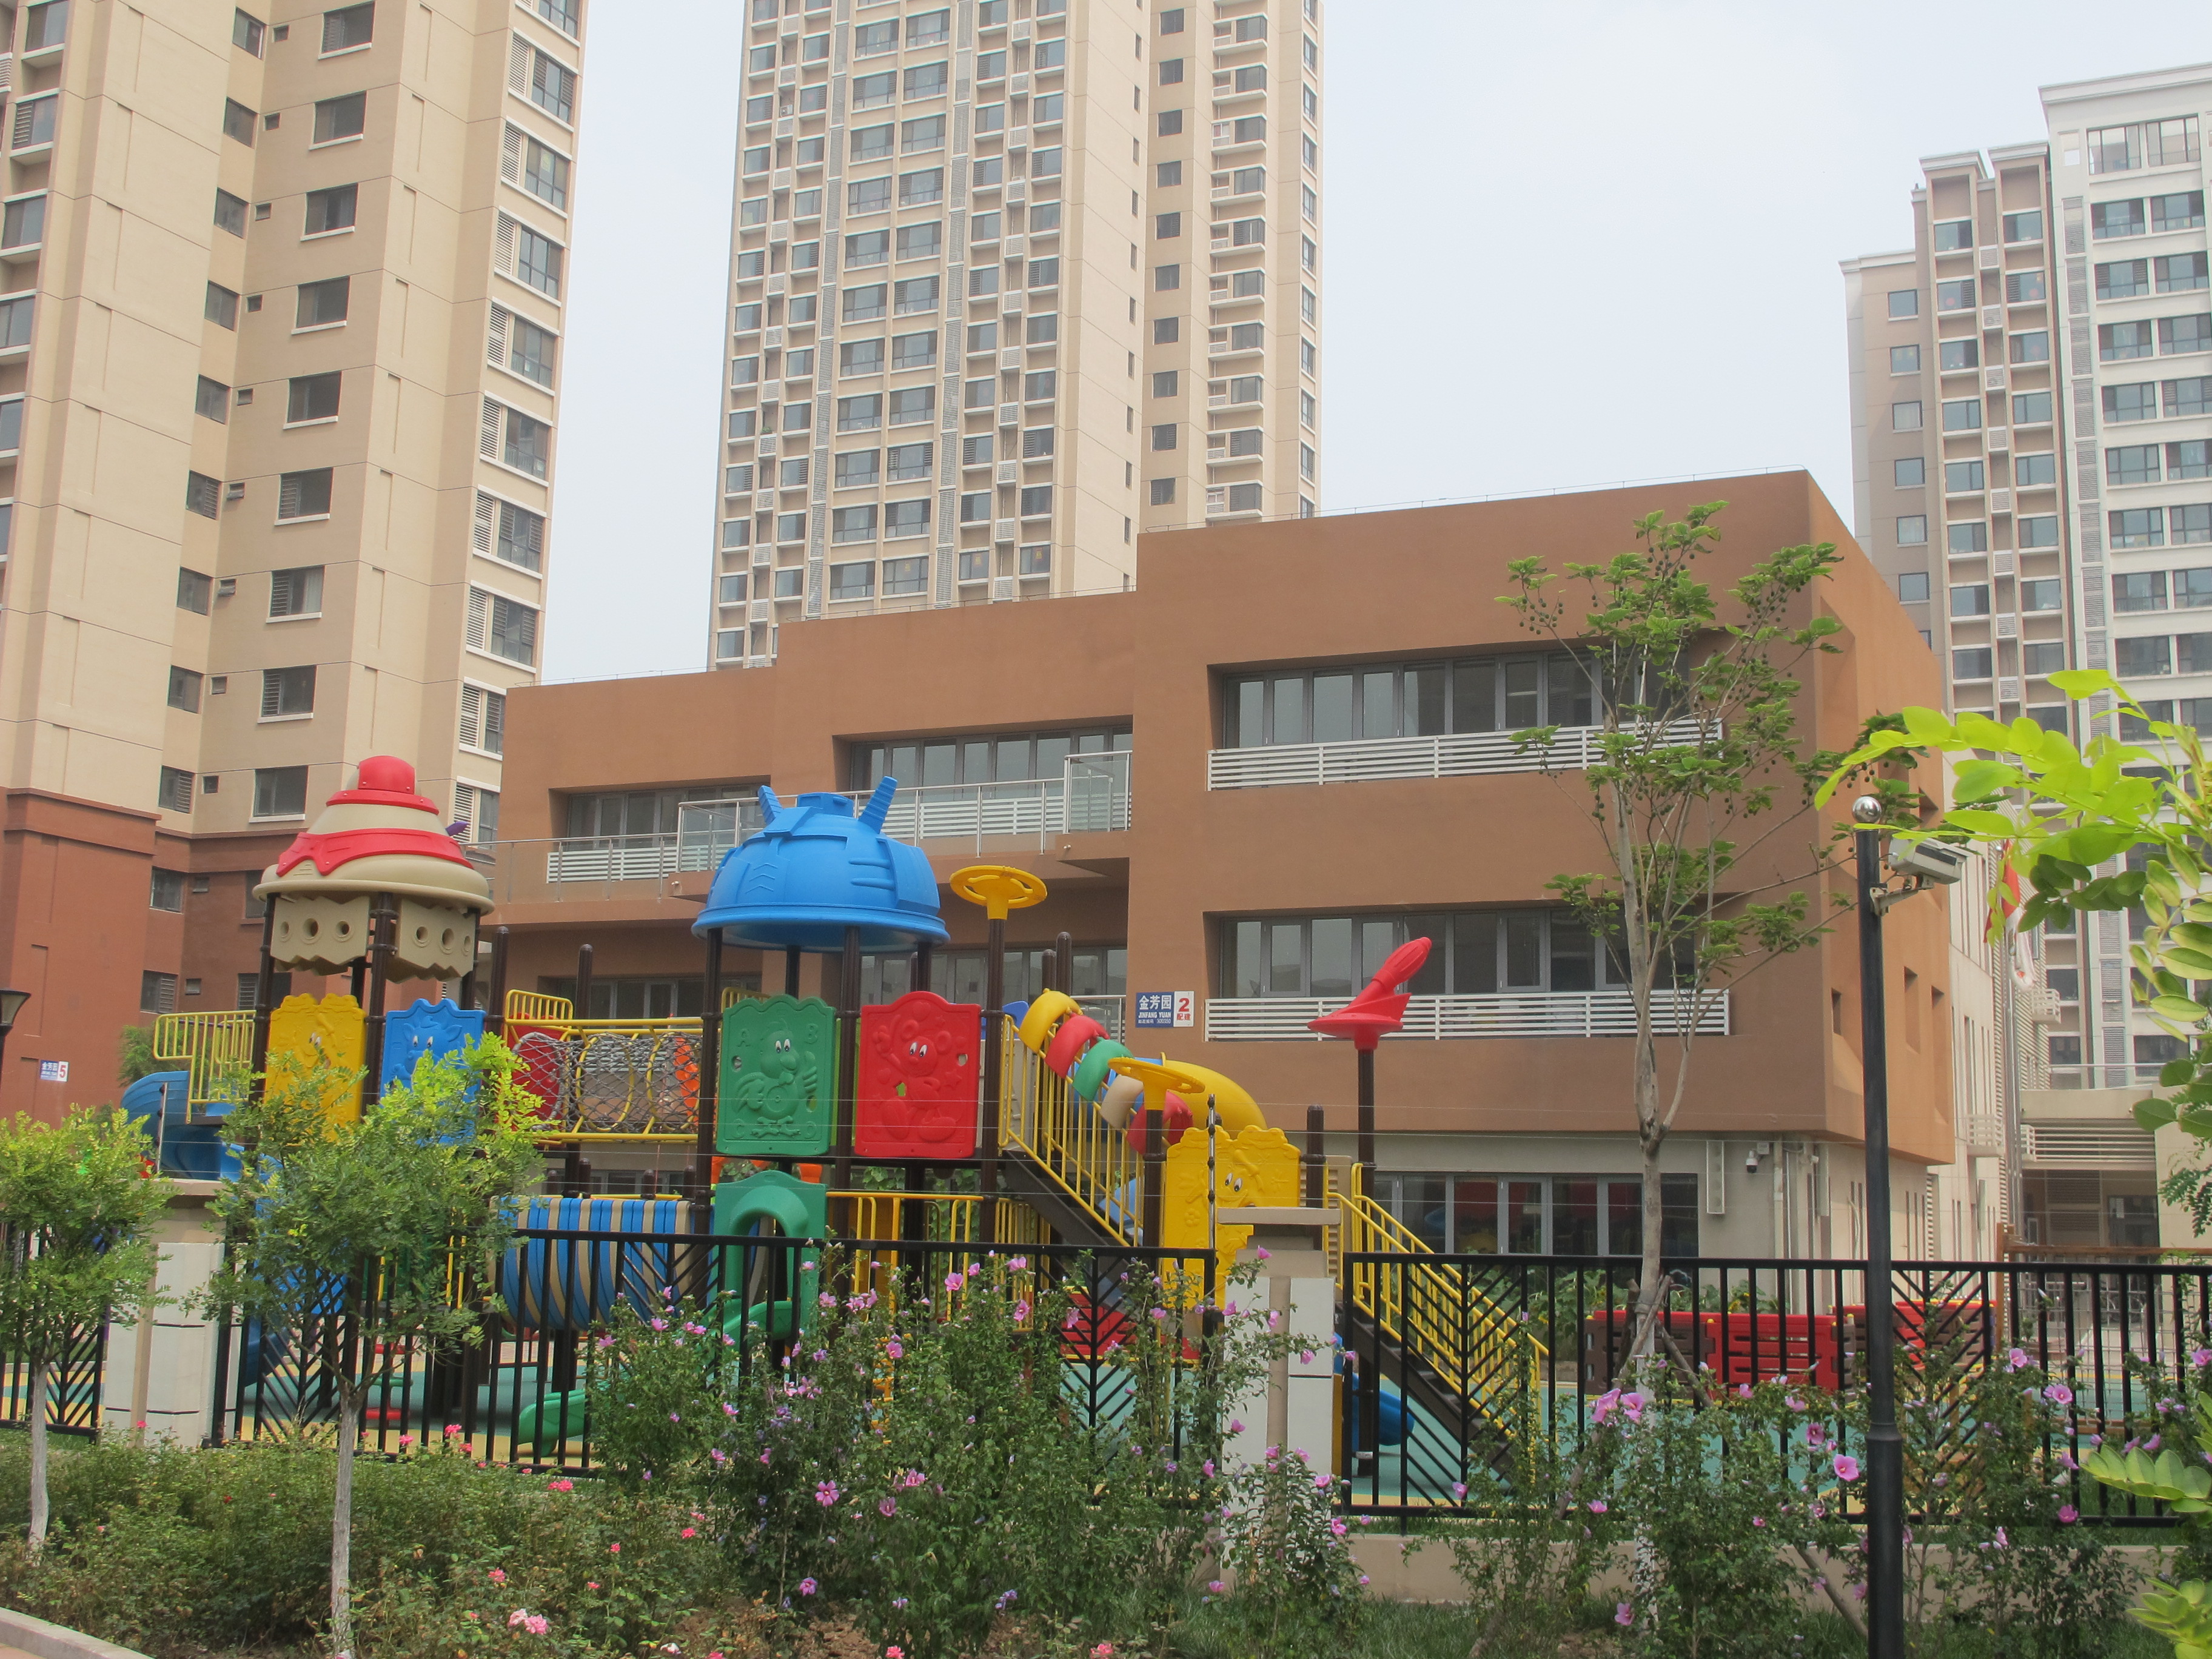 北京市丰台区第二幼儿园(小井南路) -招生-收费-幼儿园大全-贝聊